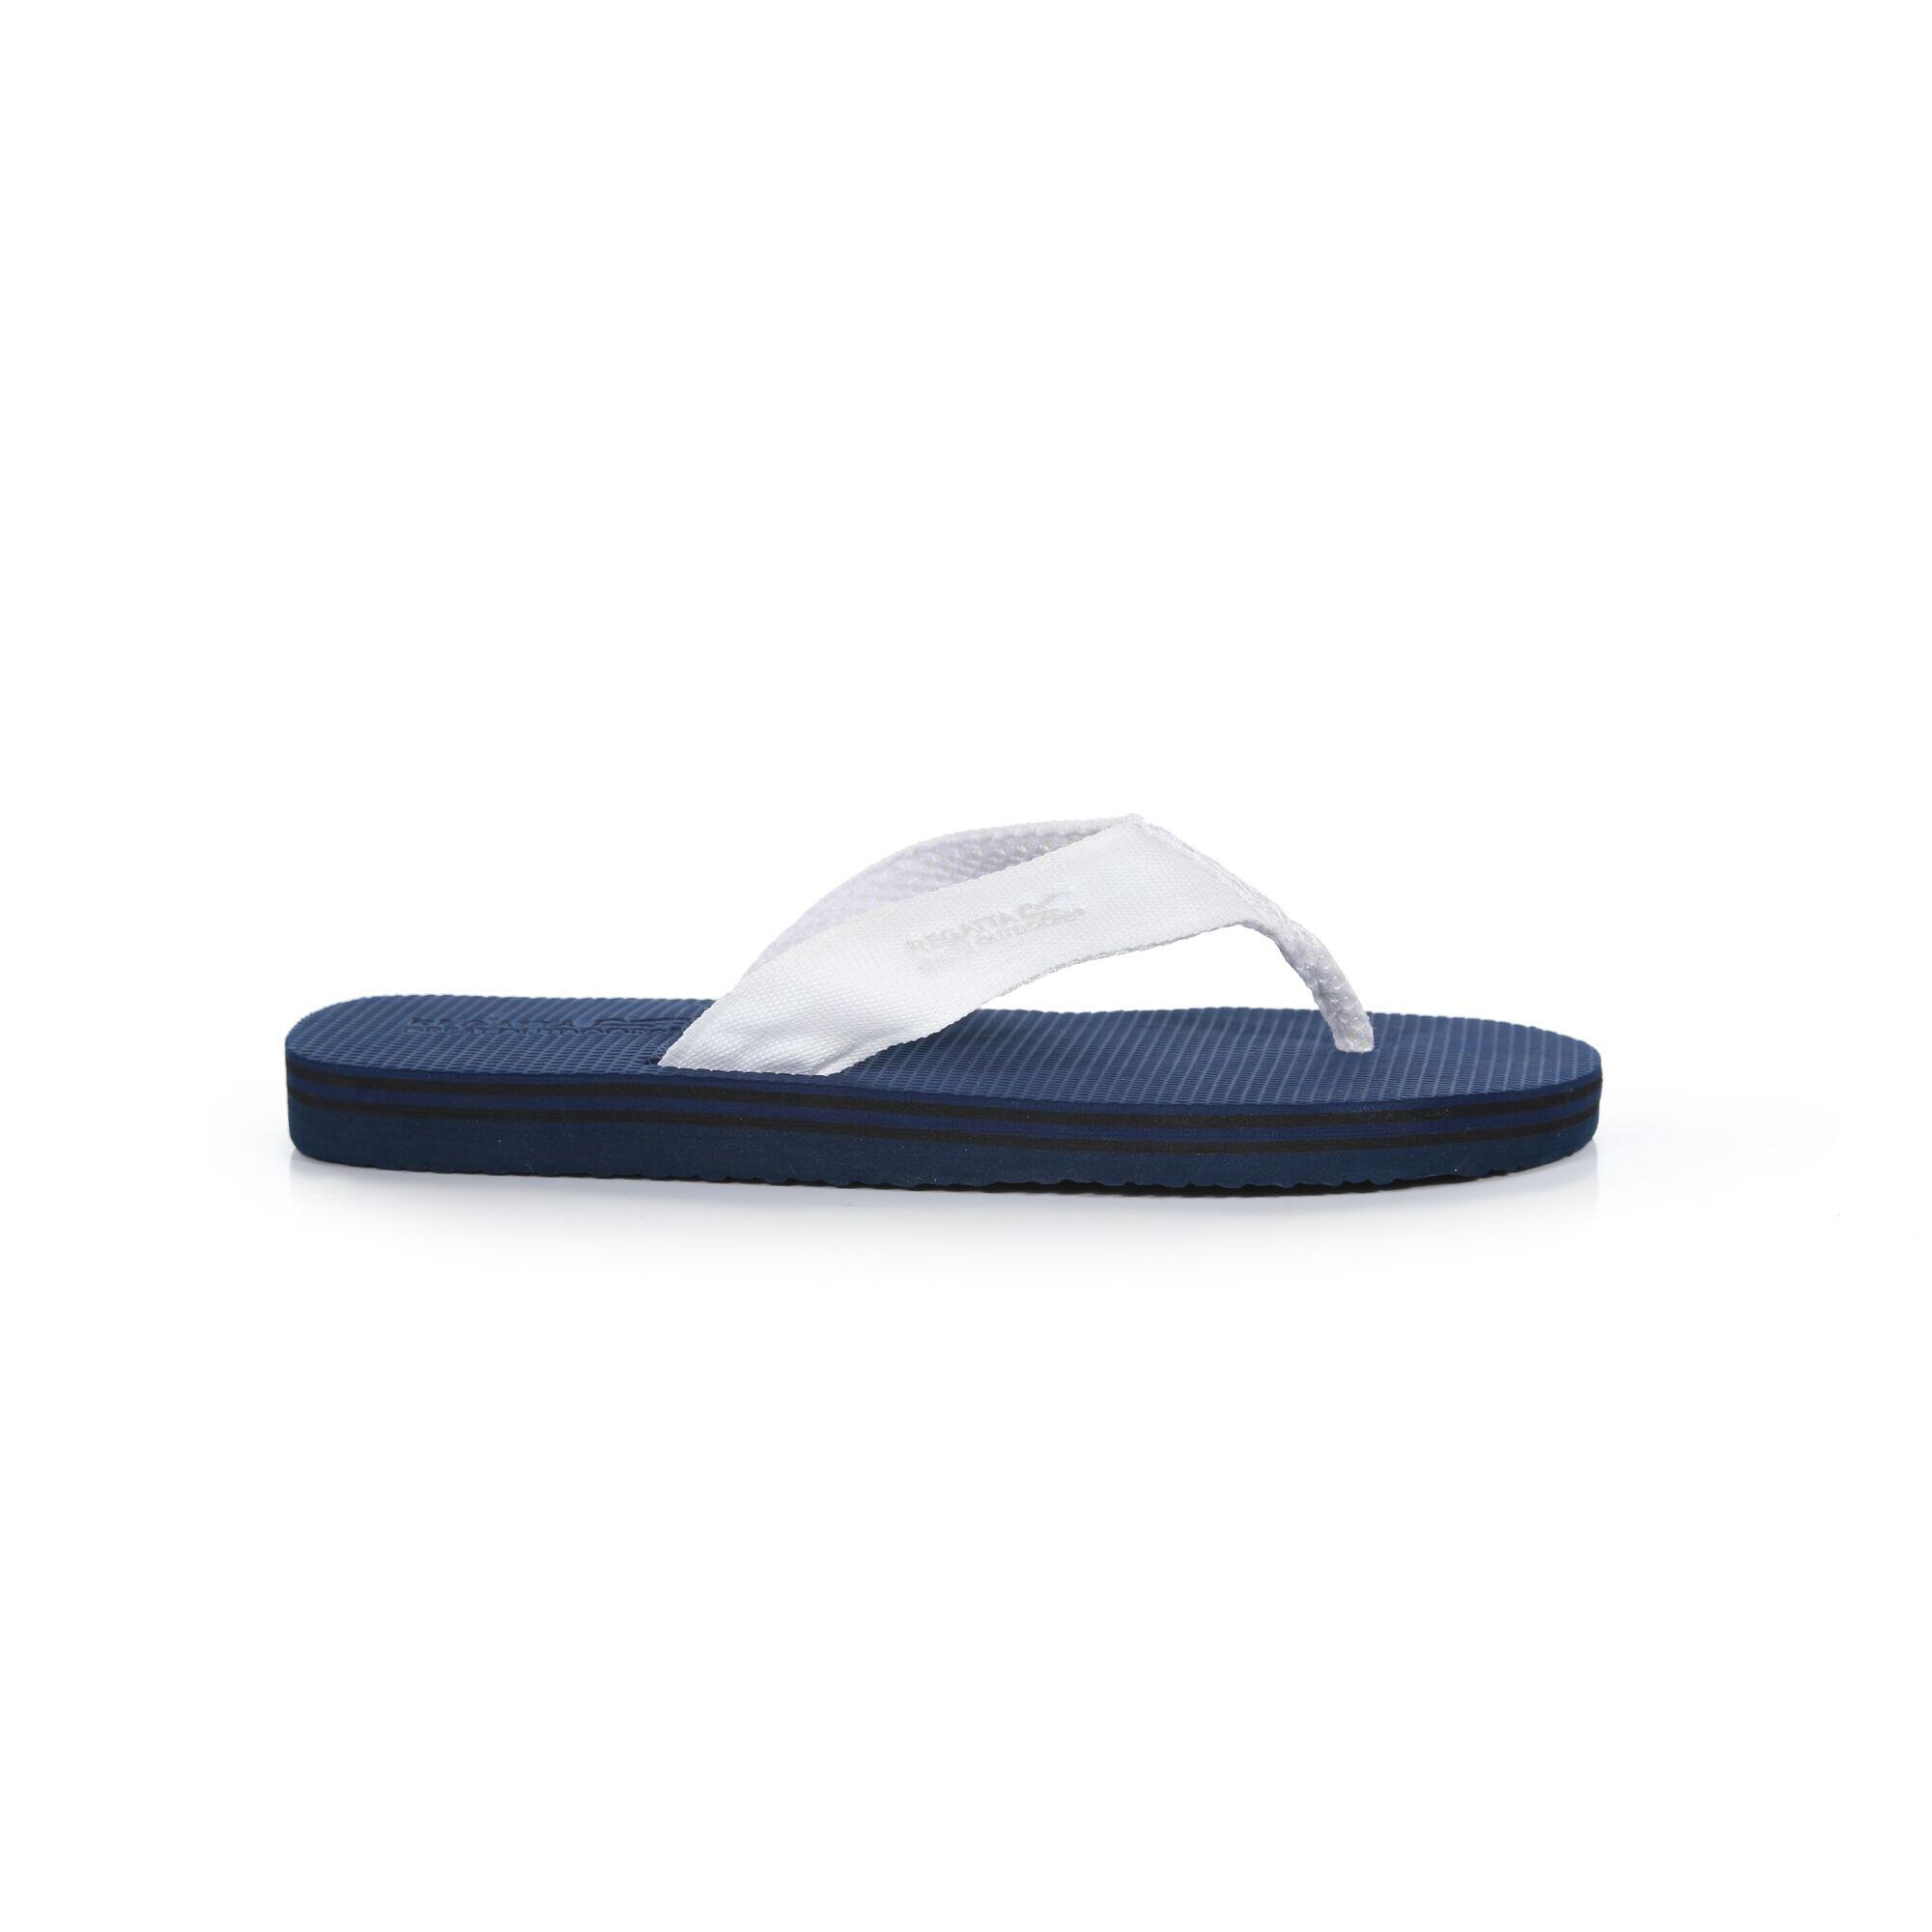 Rico Men's Poolside Flip Flops - Navy White 1/5